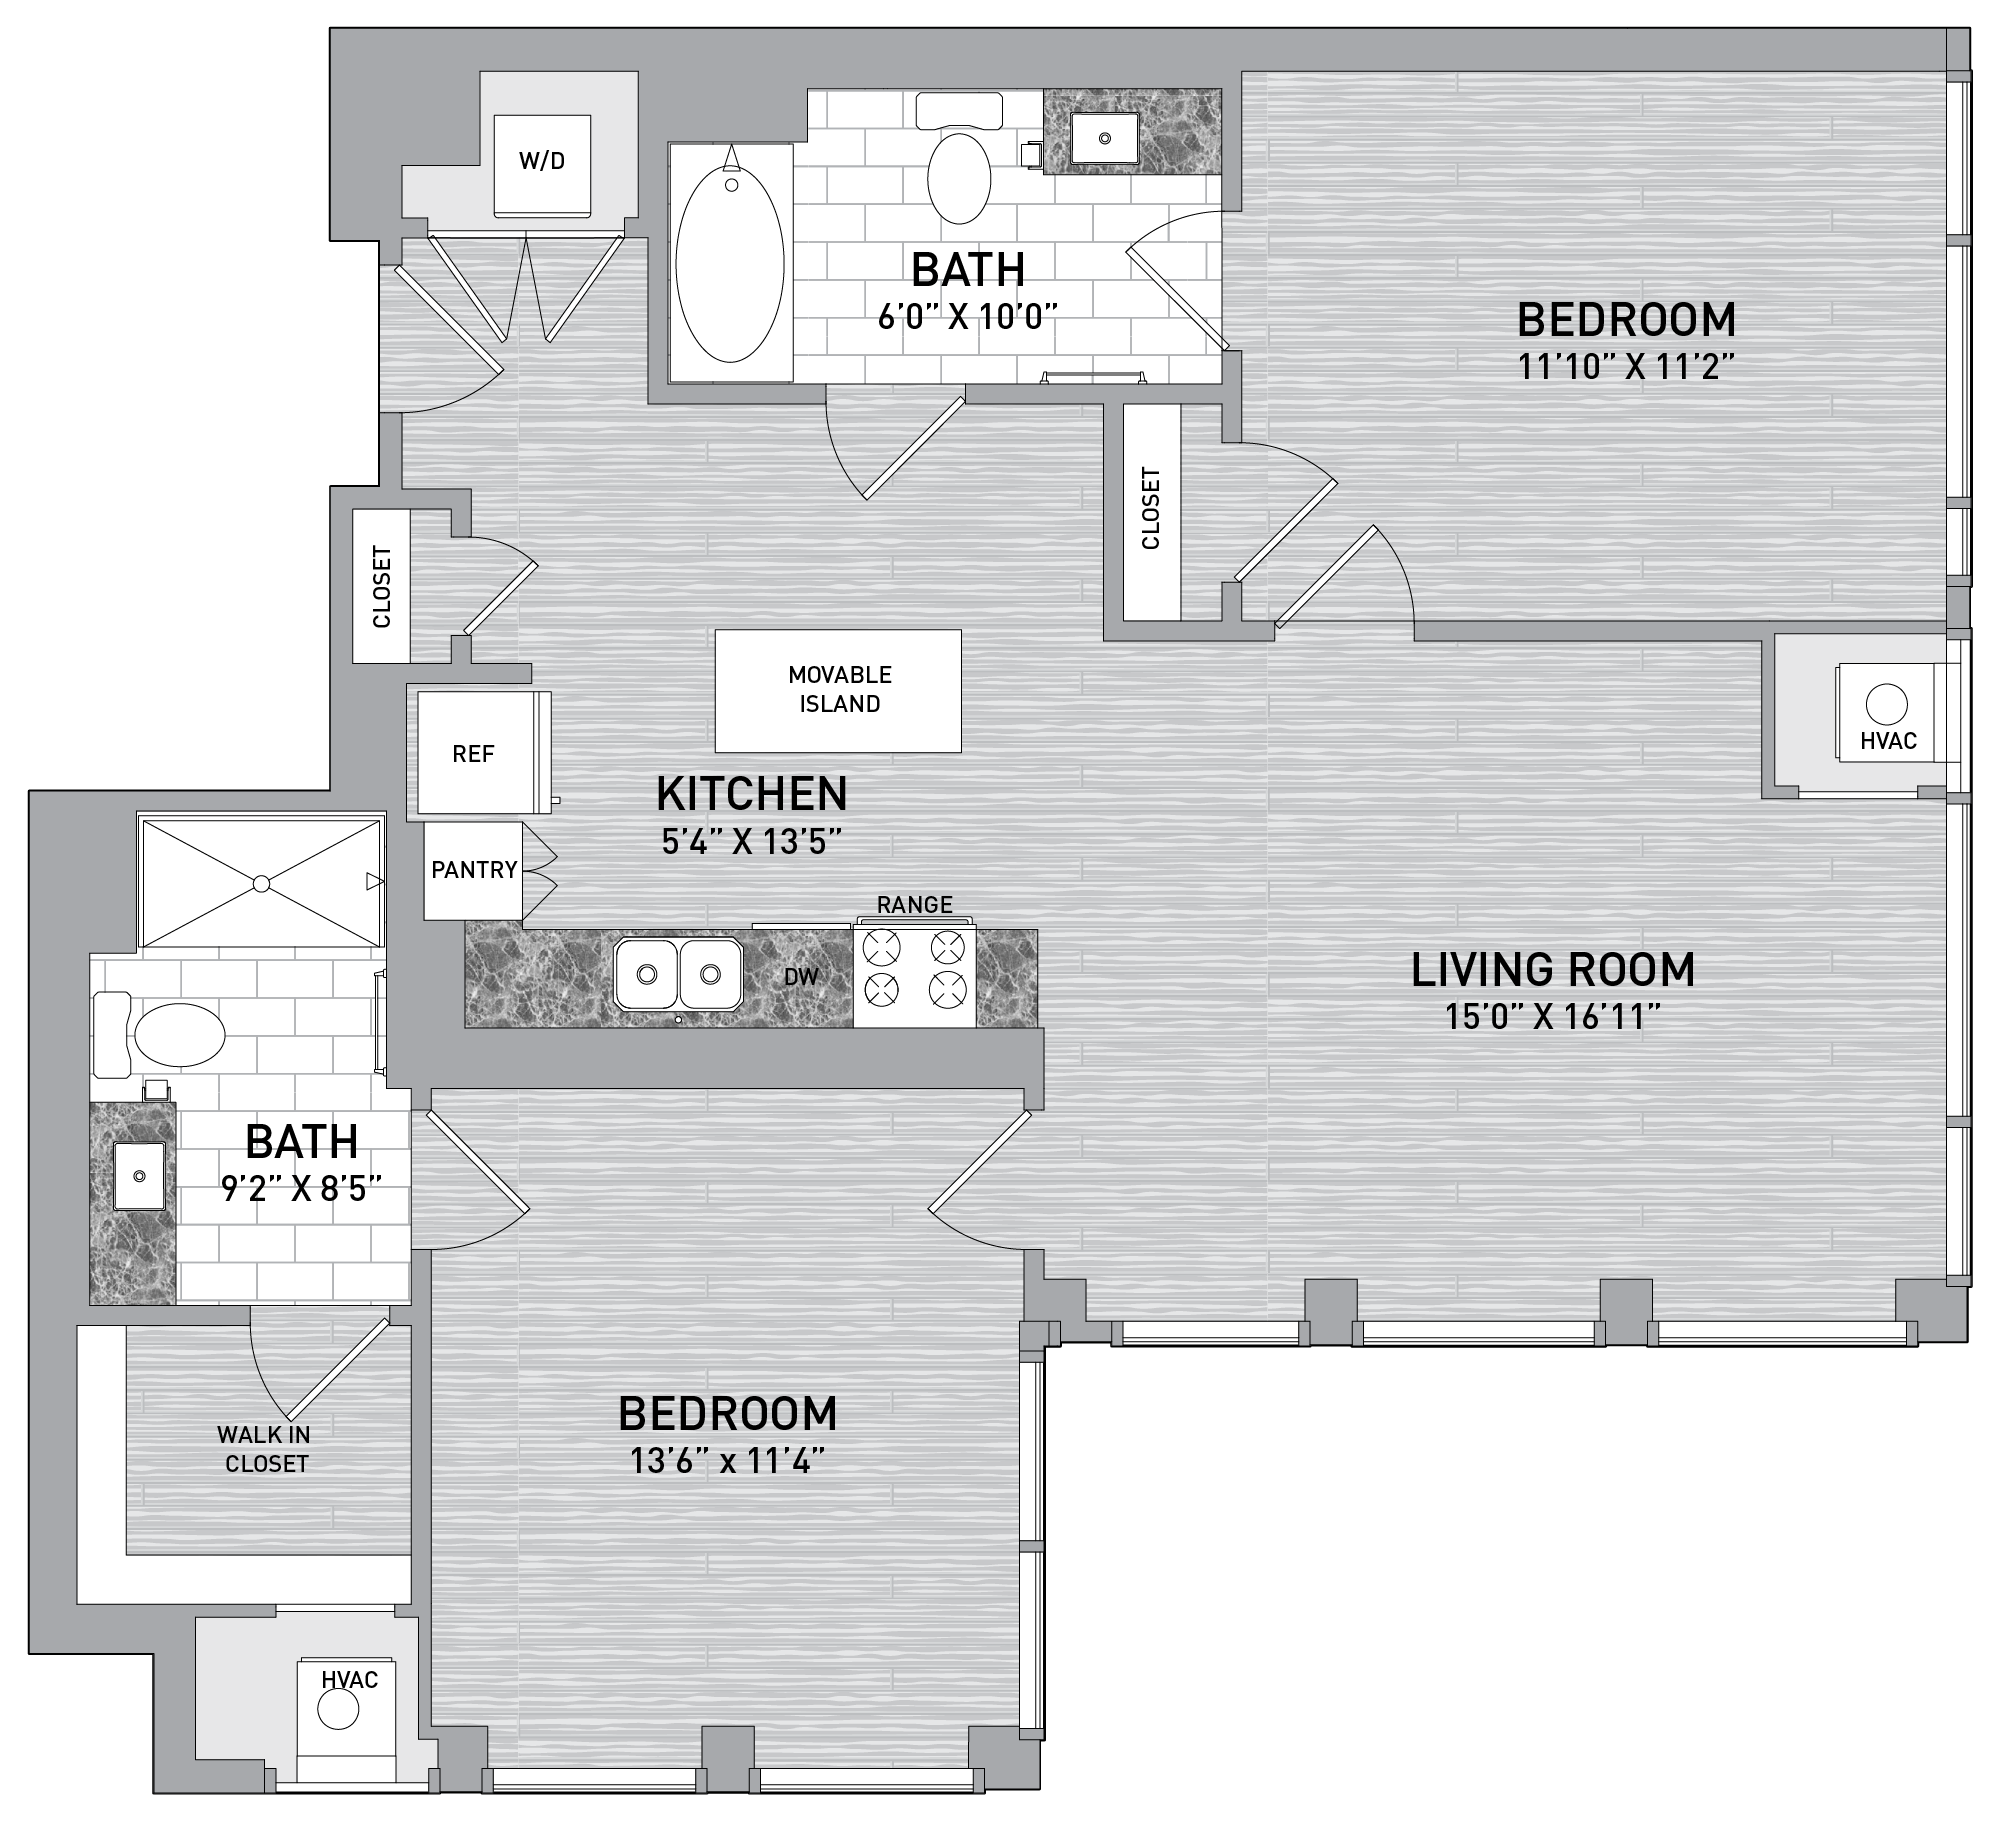 floorplan image of unit id 0301